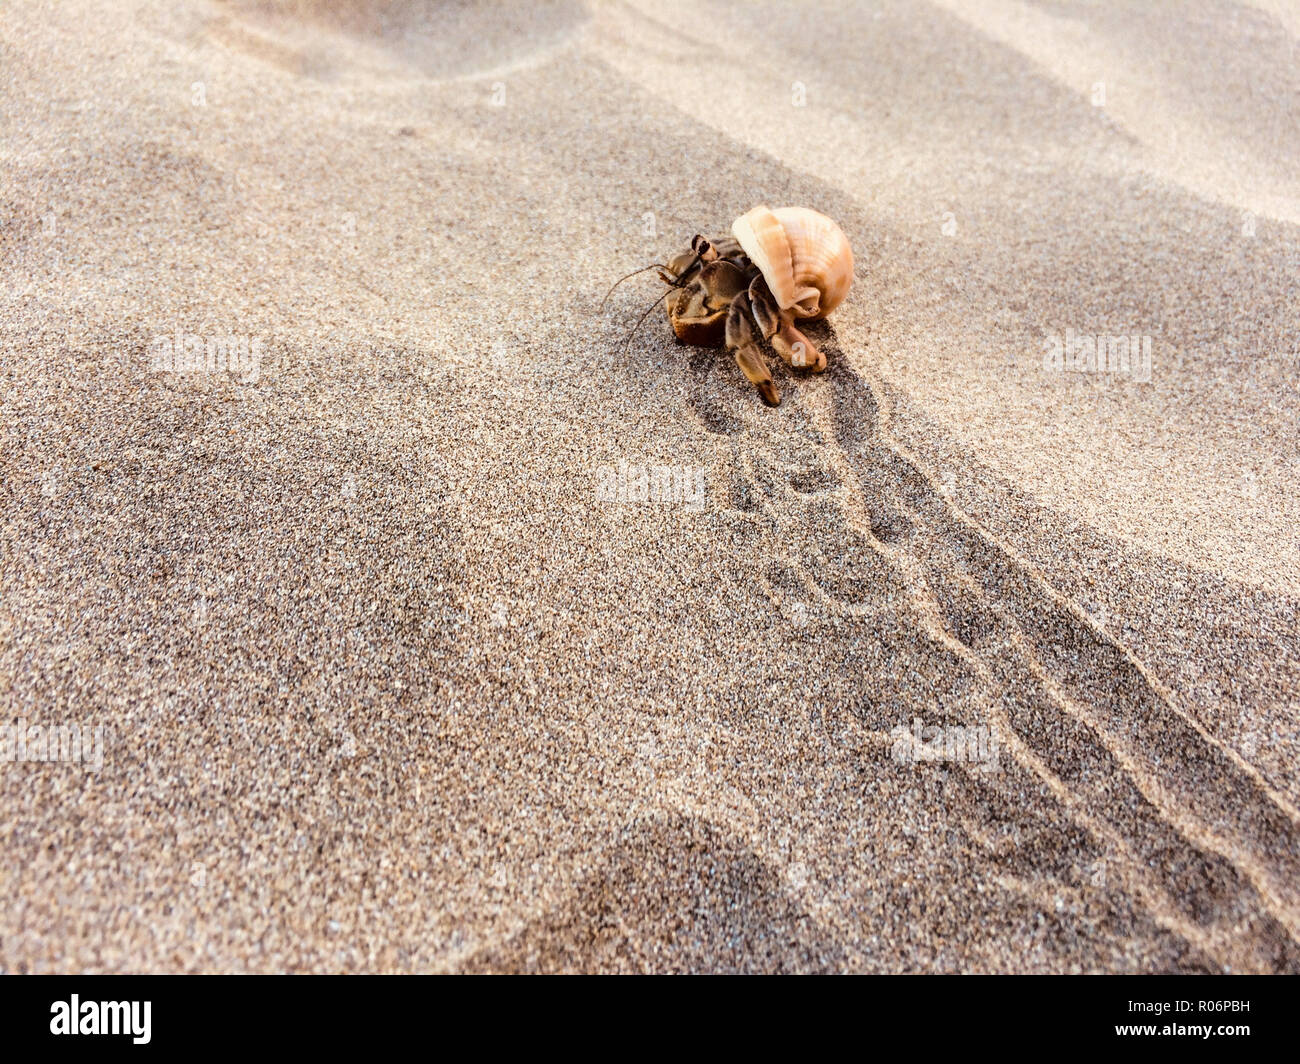 Einsiedlerkrebs am Strand - Krabben im Inneren der Schale Stockfoto